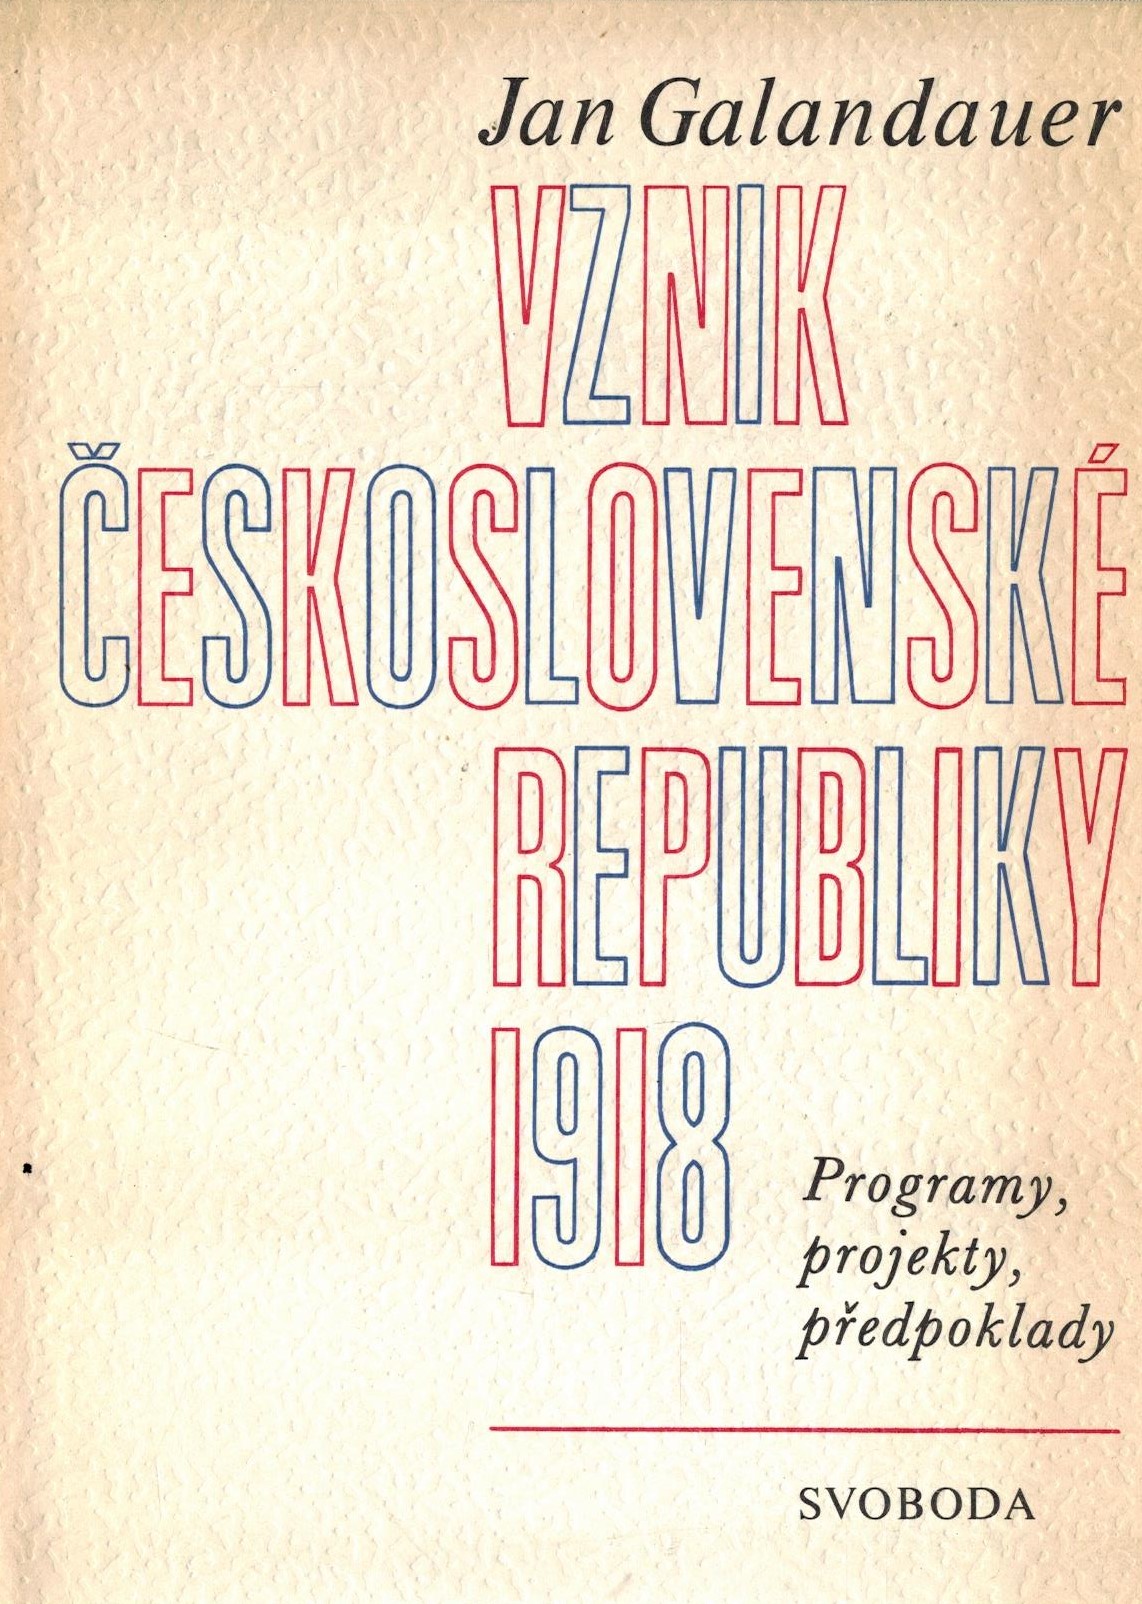 VZNIK ČESKOSLOVENSKÉ REPUBLIKY 1918